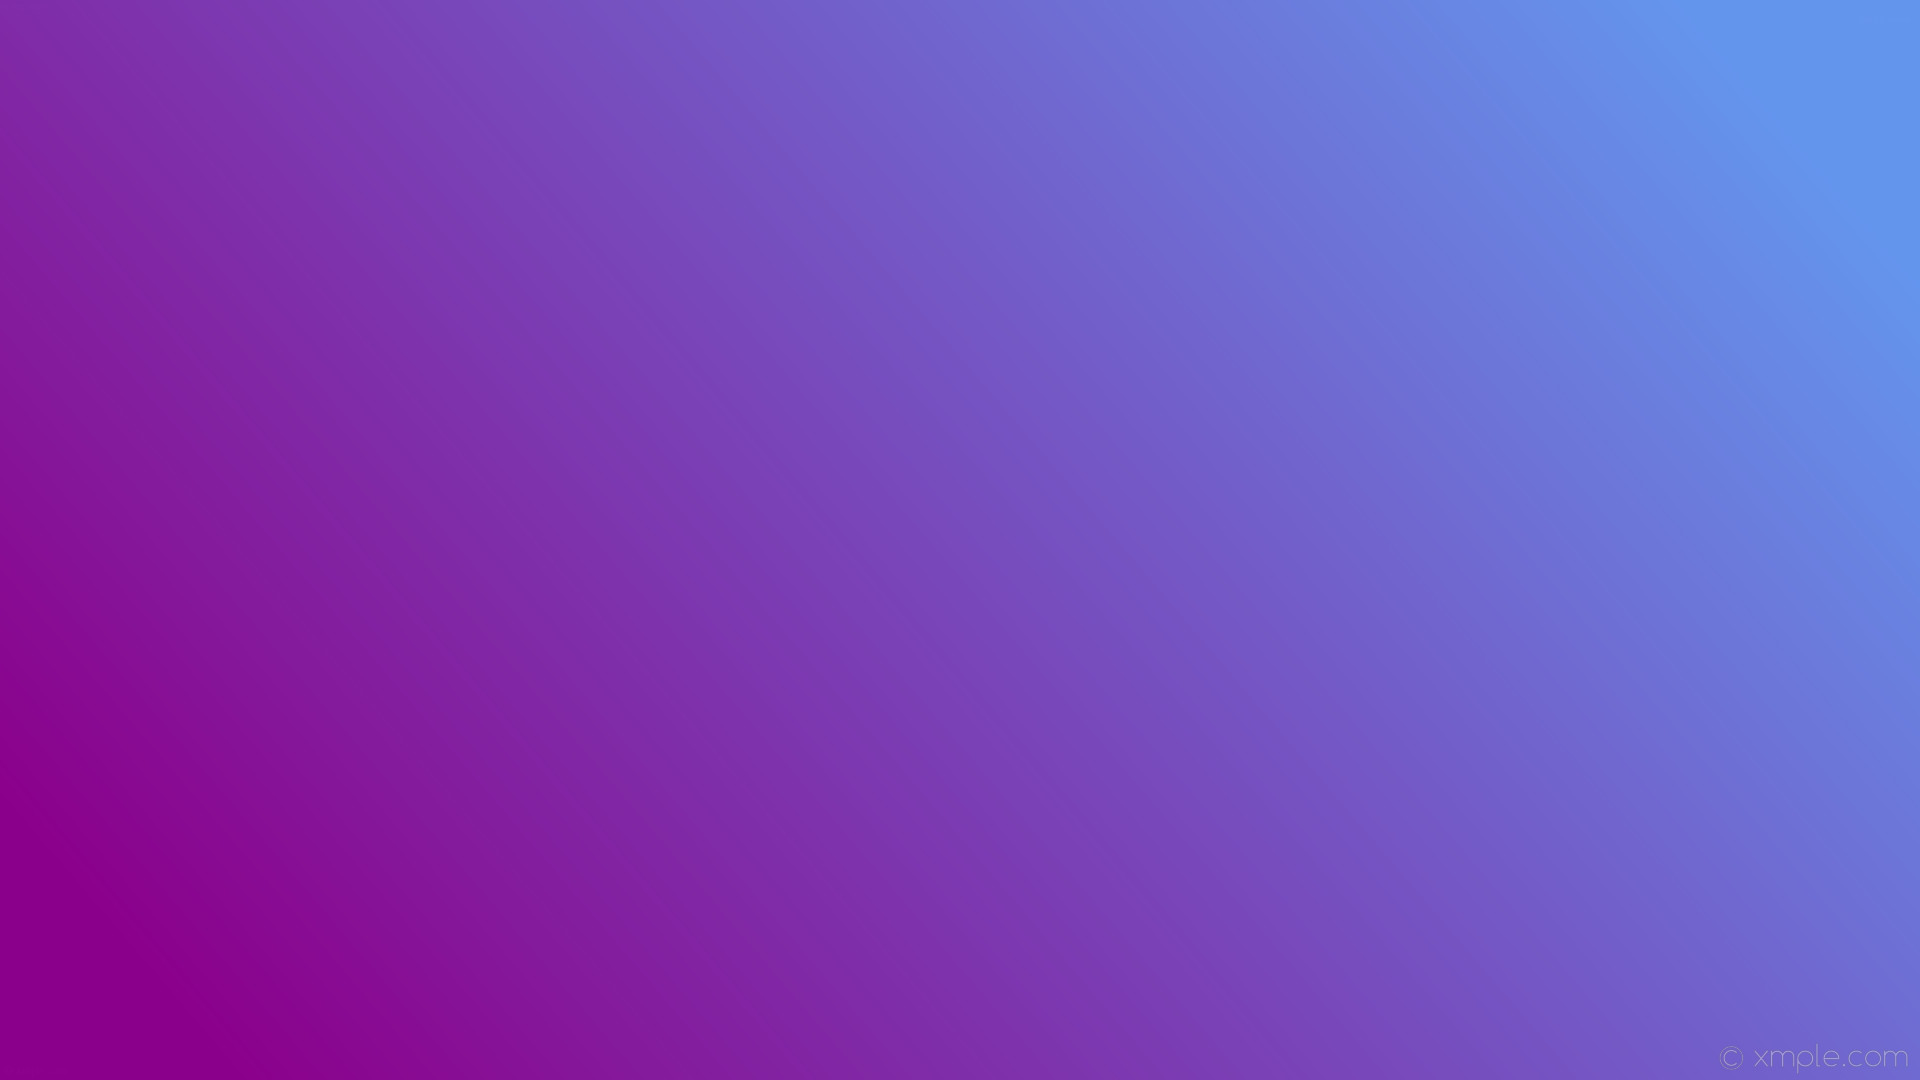 1920x1080 wallpaper linear blue purple gradient cornflower blue dark magenta #6495ed  #8b008b 15Â°